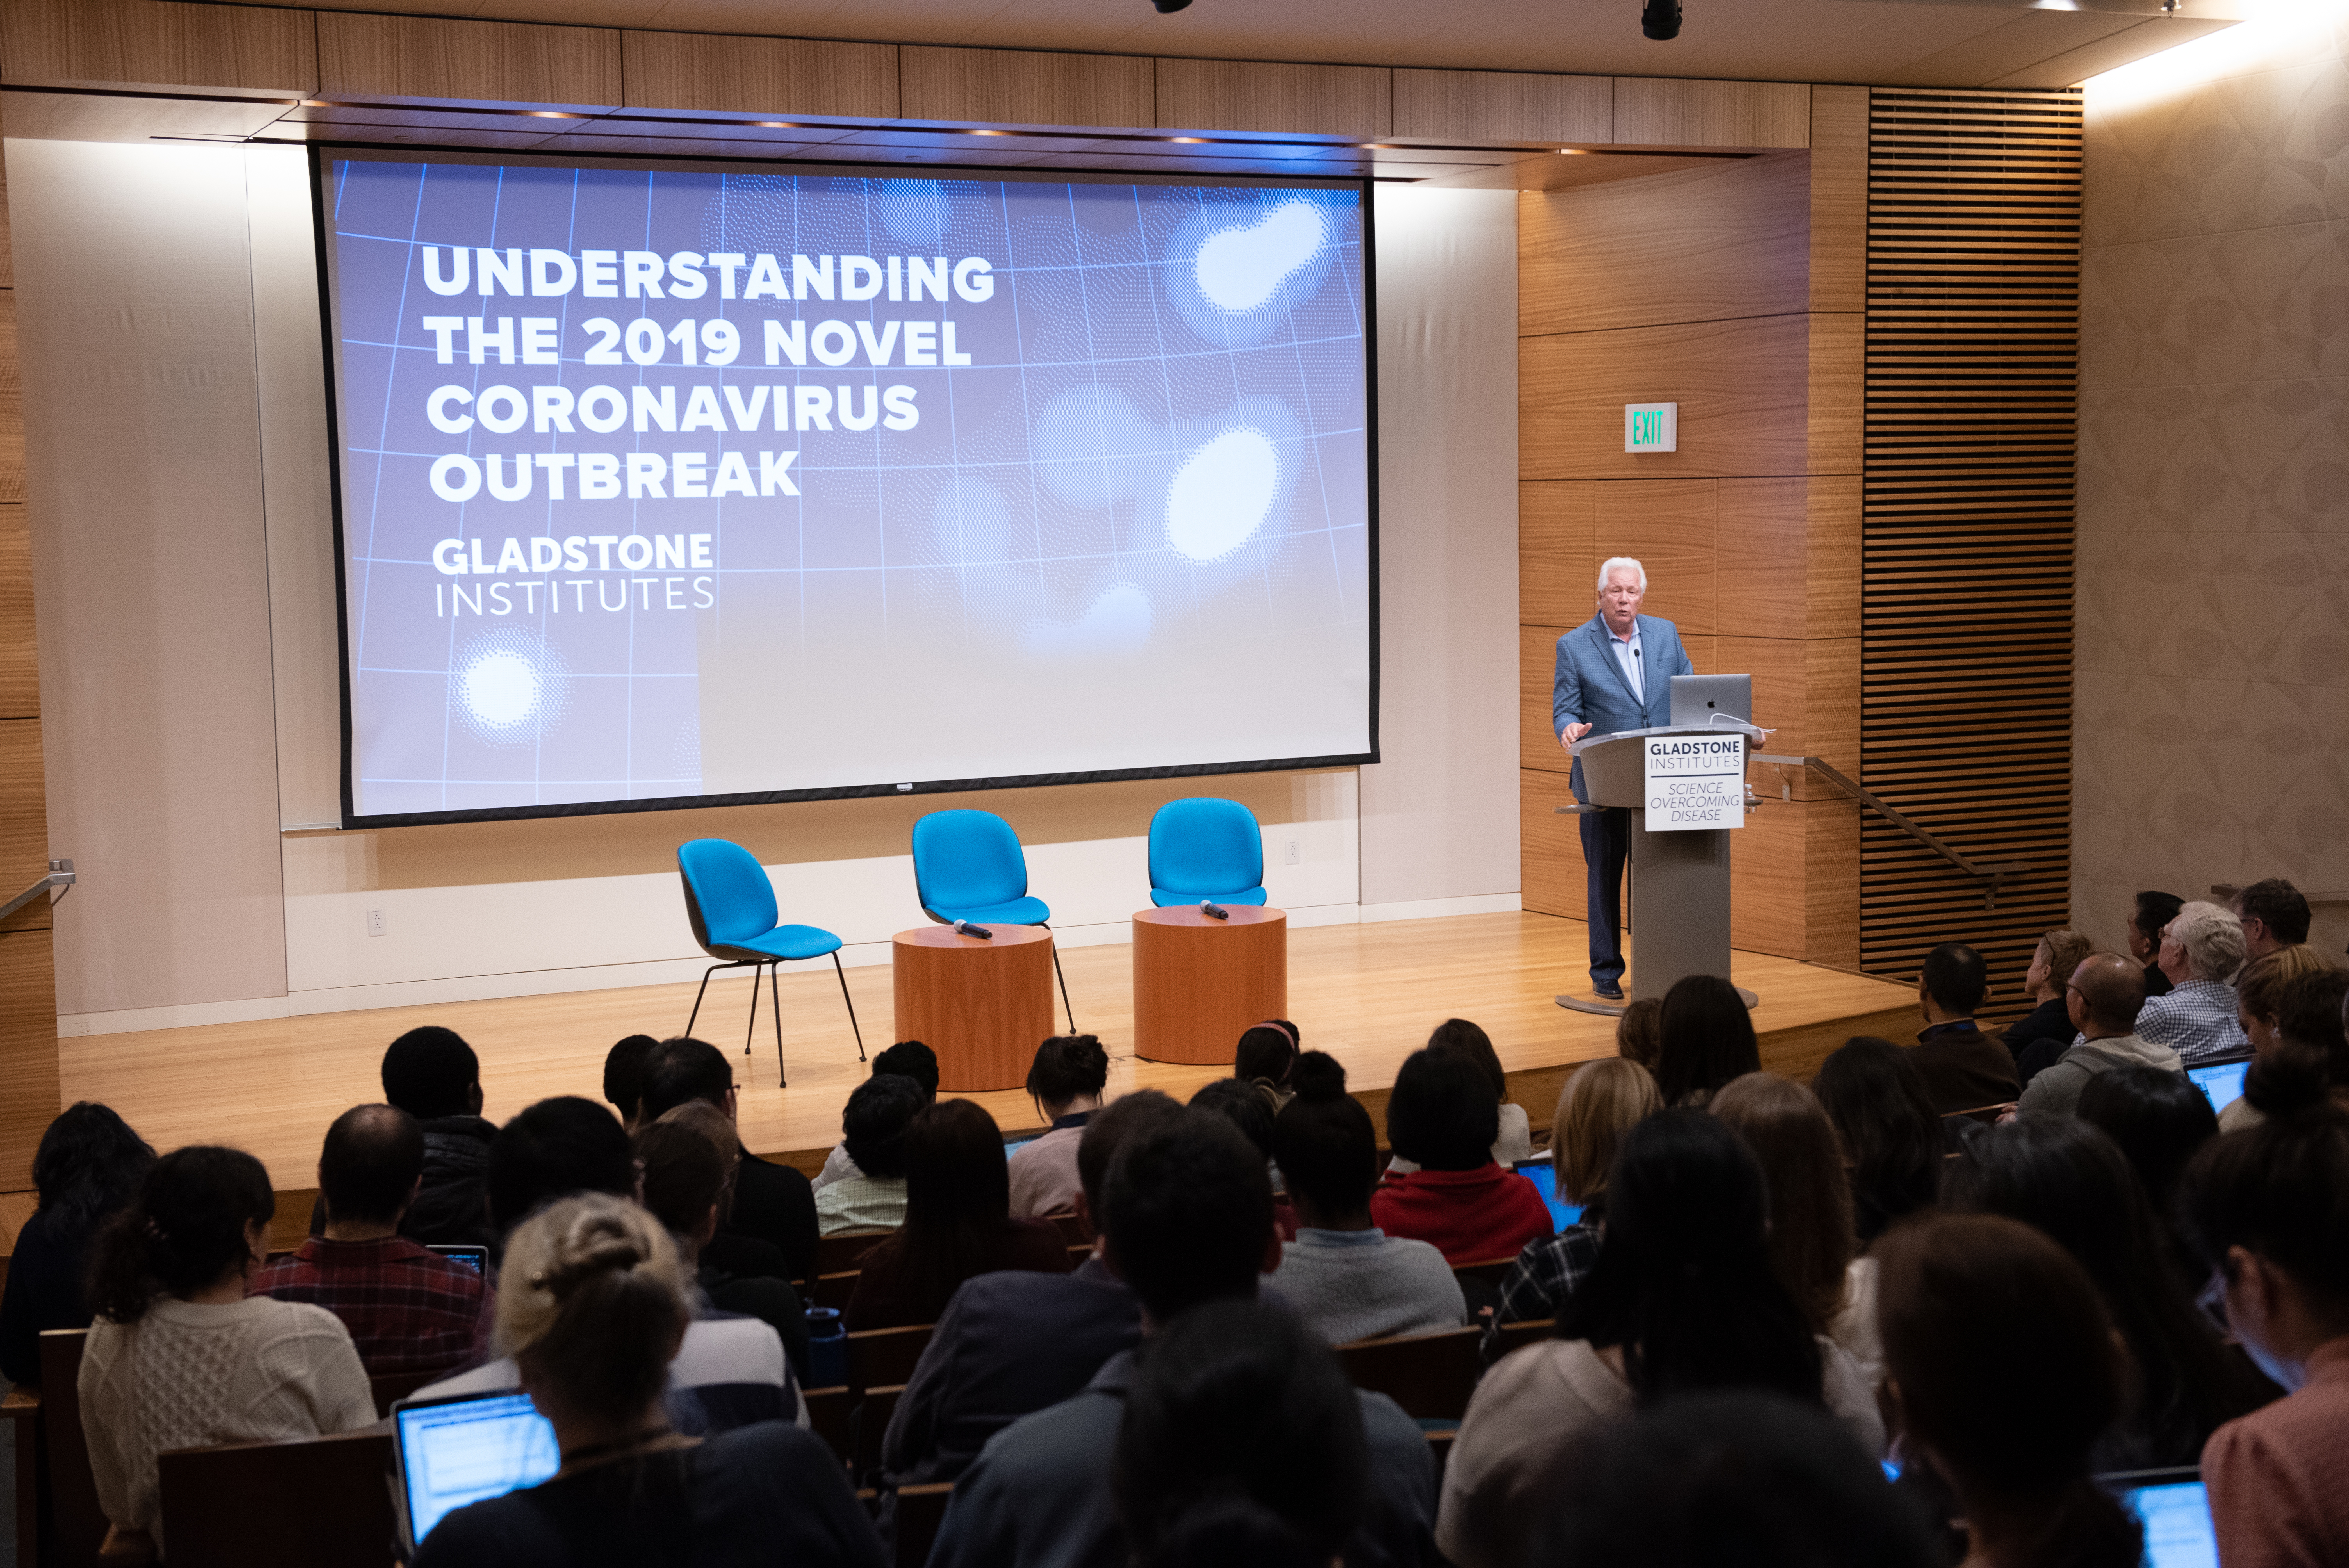 Warner Greene standing at a podium speaking during the Understanding the Coronavirus event